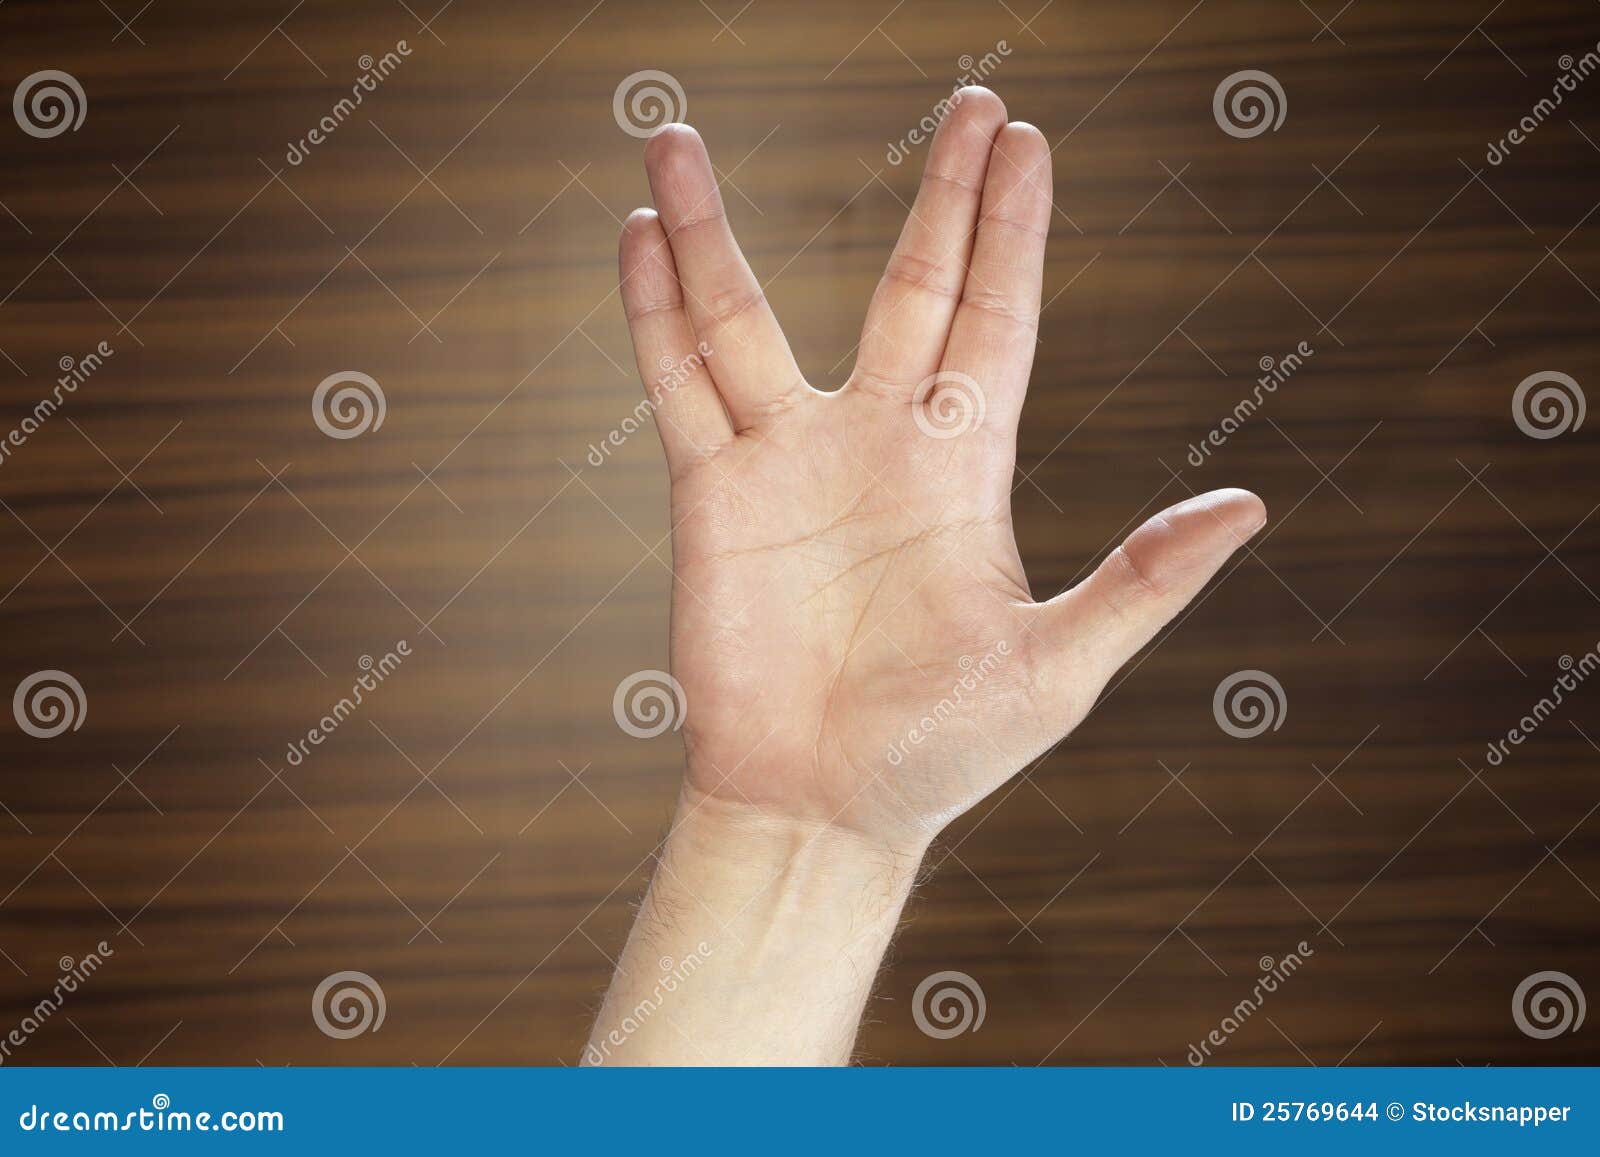 2 2 четыре пальца. Пальцы в разные стороны. Средний и безымянный палец. Жест два пальца в сторону. Приветствие пальцами.